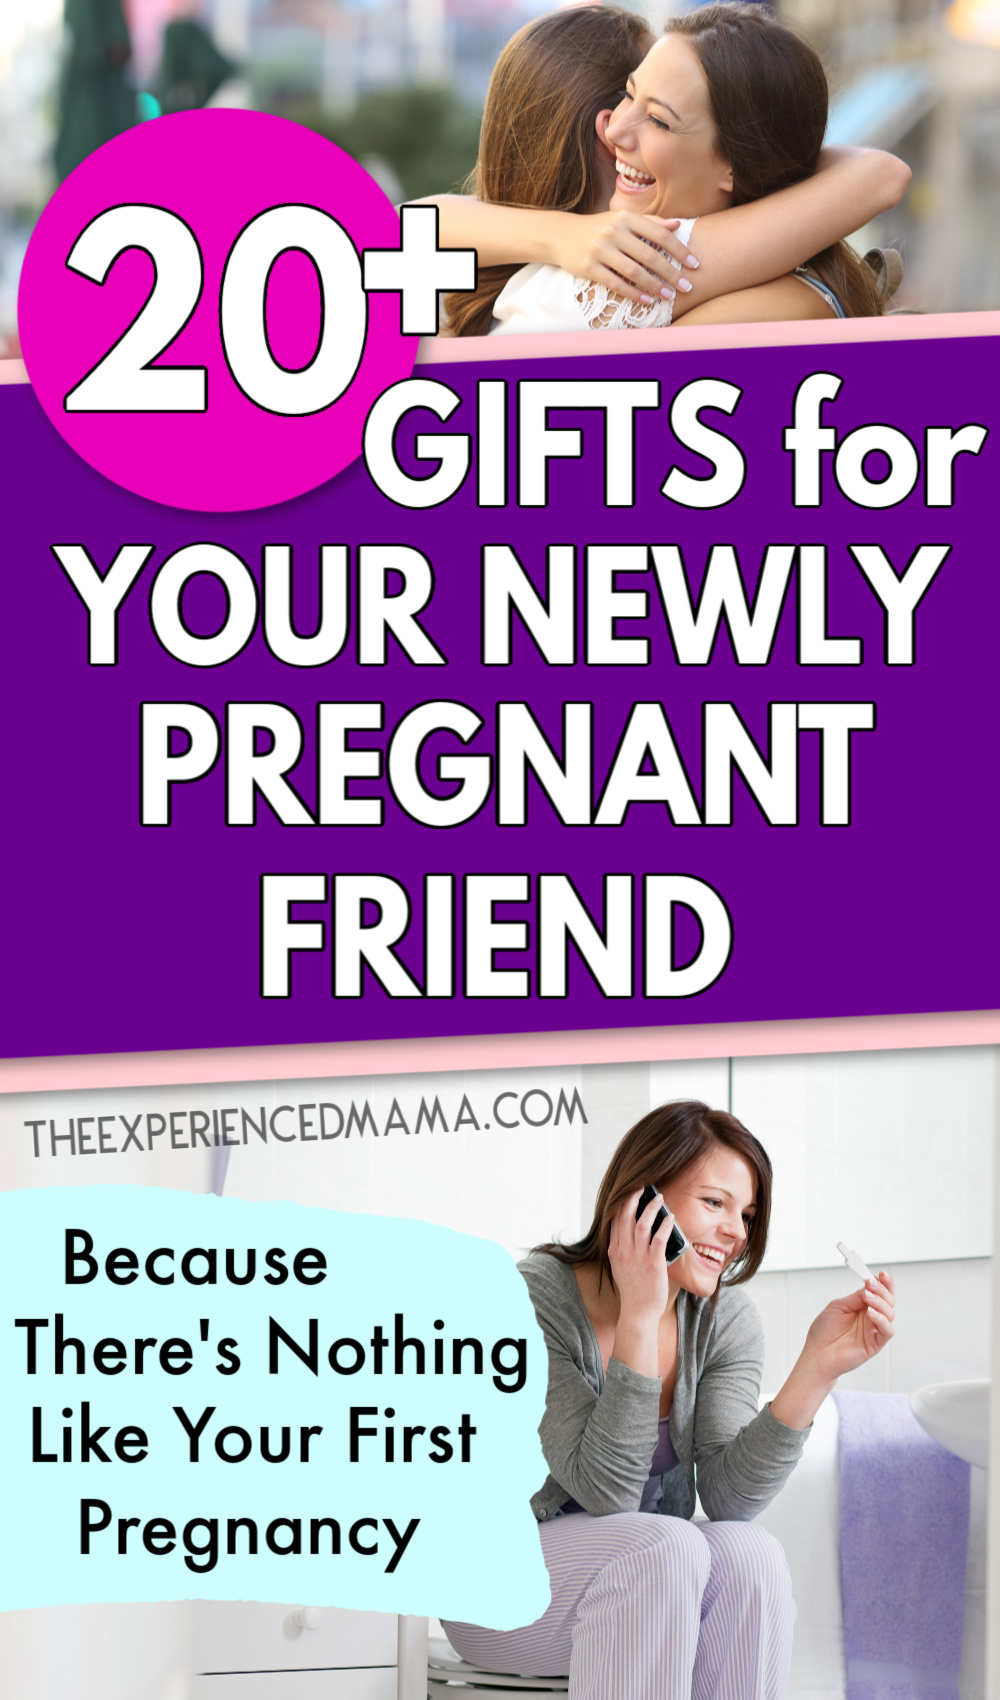 друзья обнимаются после того, как одна подруга делает подарок недавно беременной подруге, женщина делится с подругой хорошими новостями о беременности